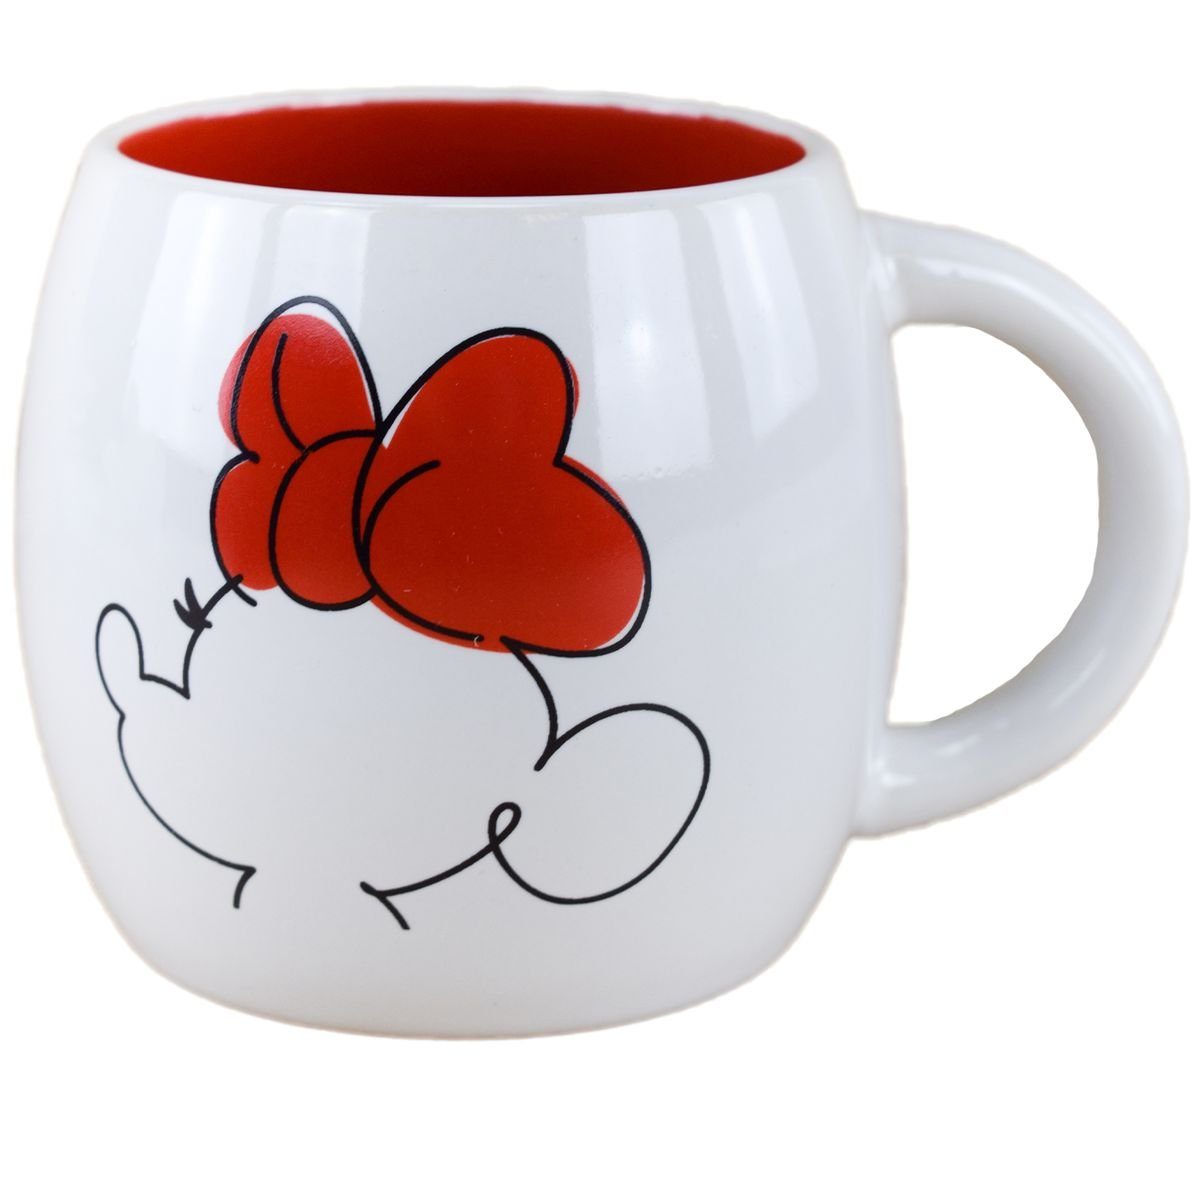 Stor Tasse Disney Minnie Mouse Tasse Schleife & Herz ca. 380 ml Kaffeetasse, Keramik, authentisches Design